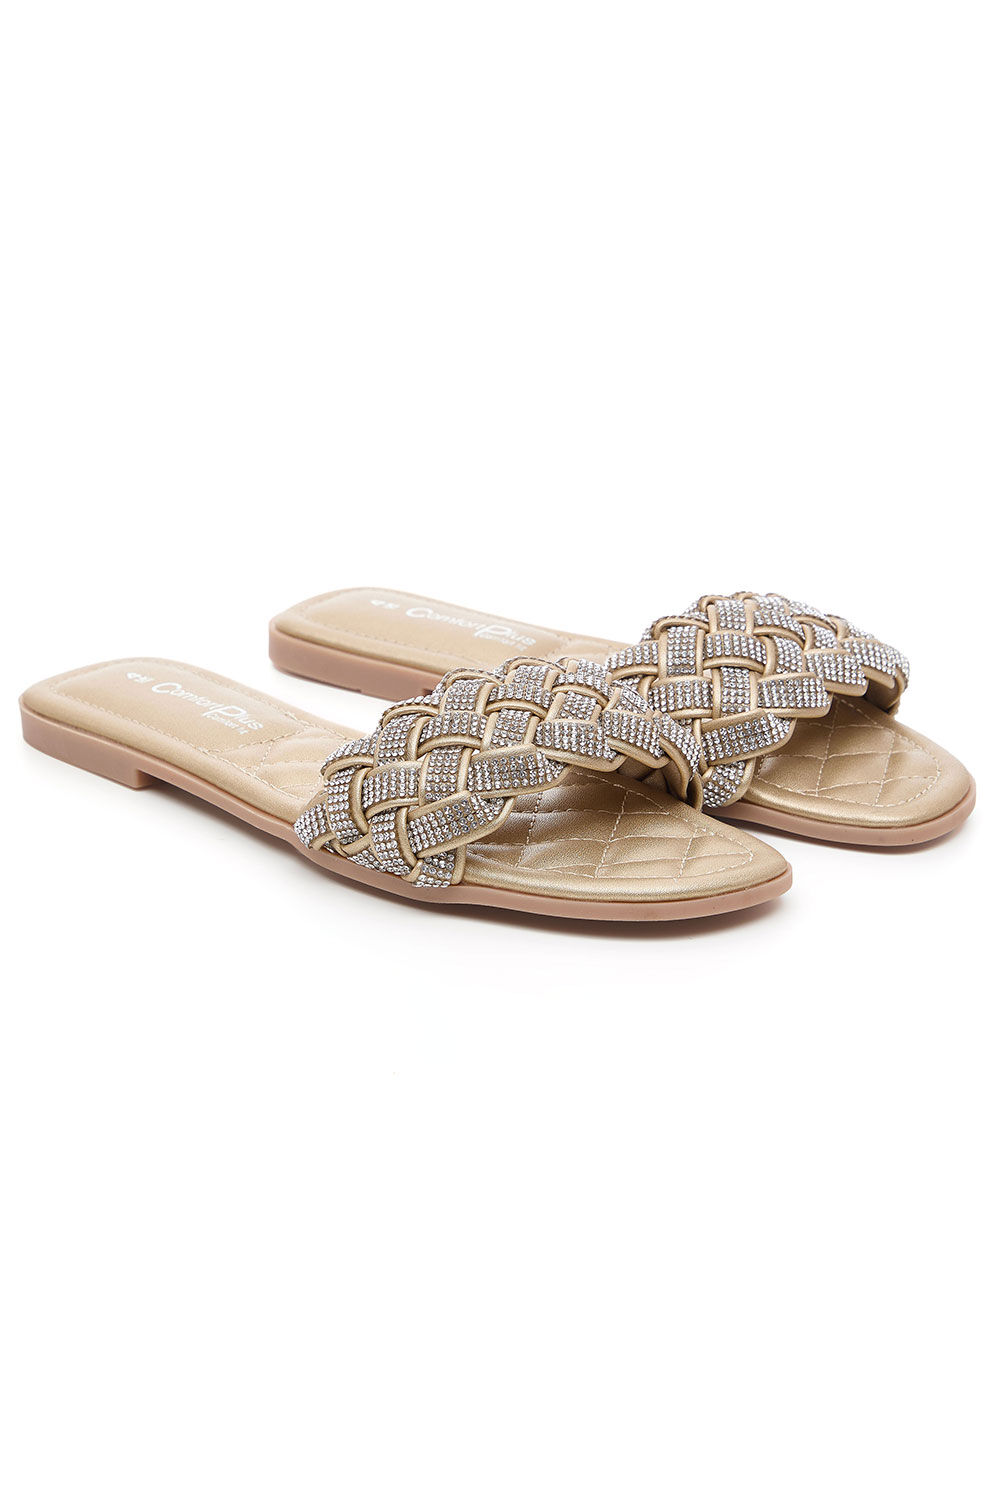 Comfort Plus Bronze - Diamante Weave Front Band Flat Sandals, Size: 3